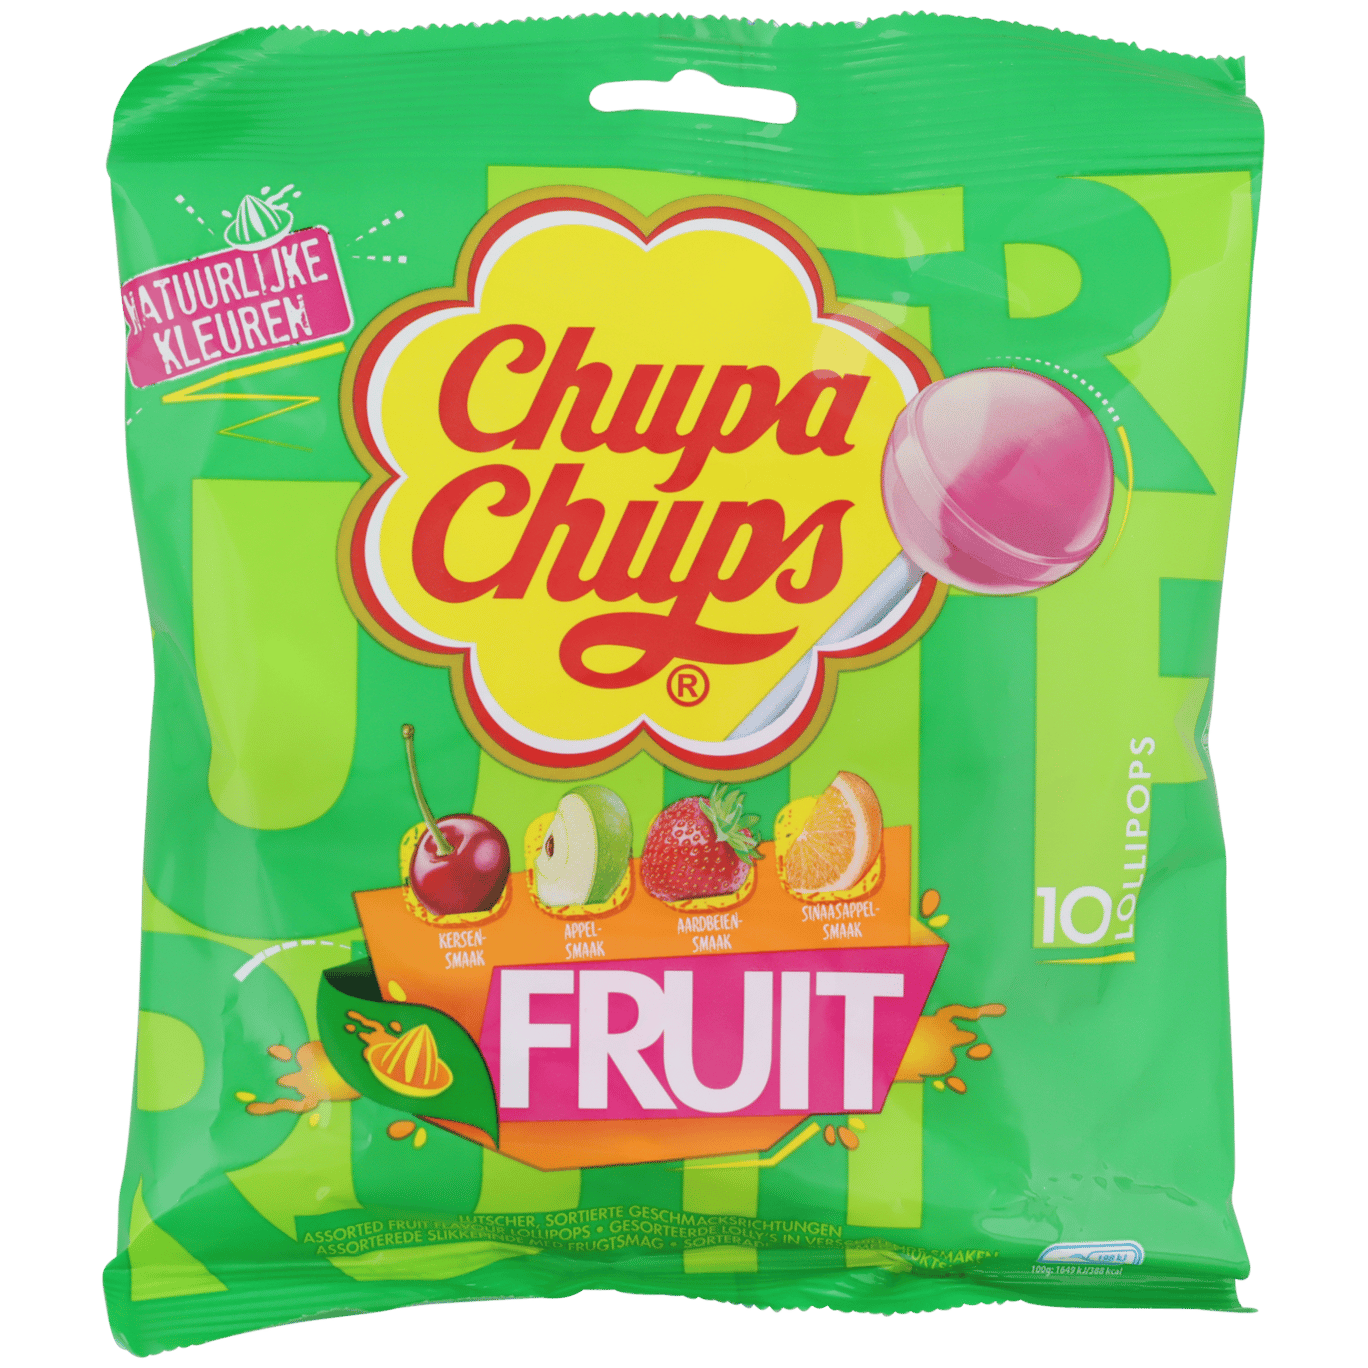 Chupa Chups Fruit